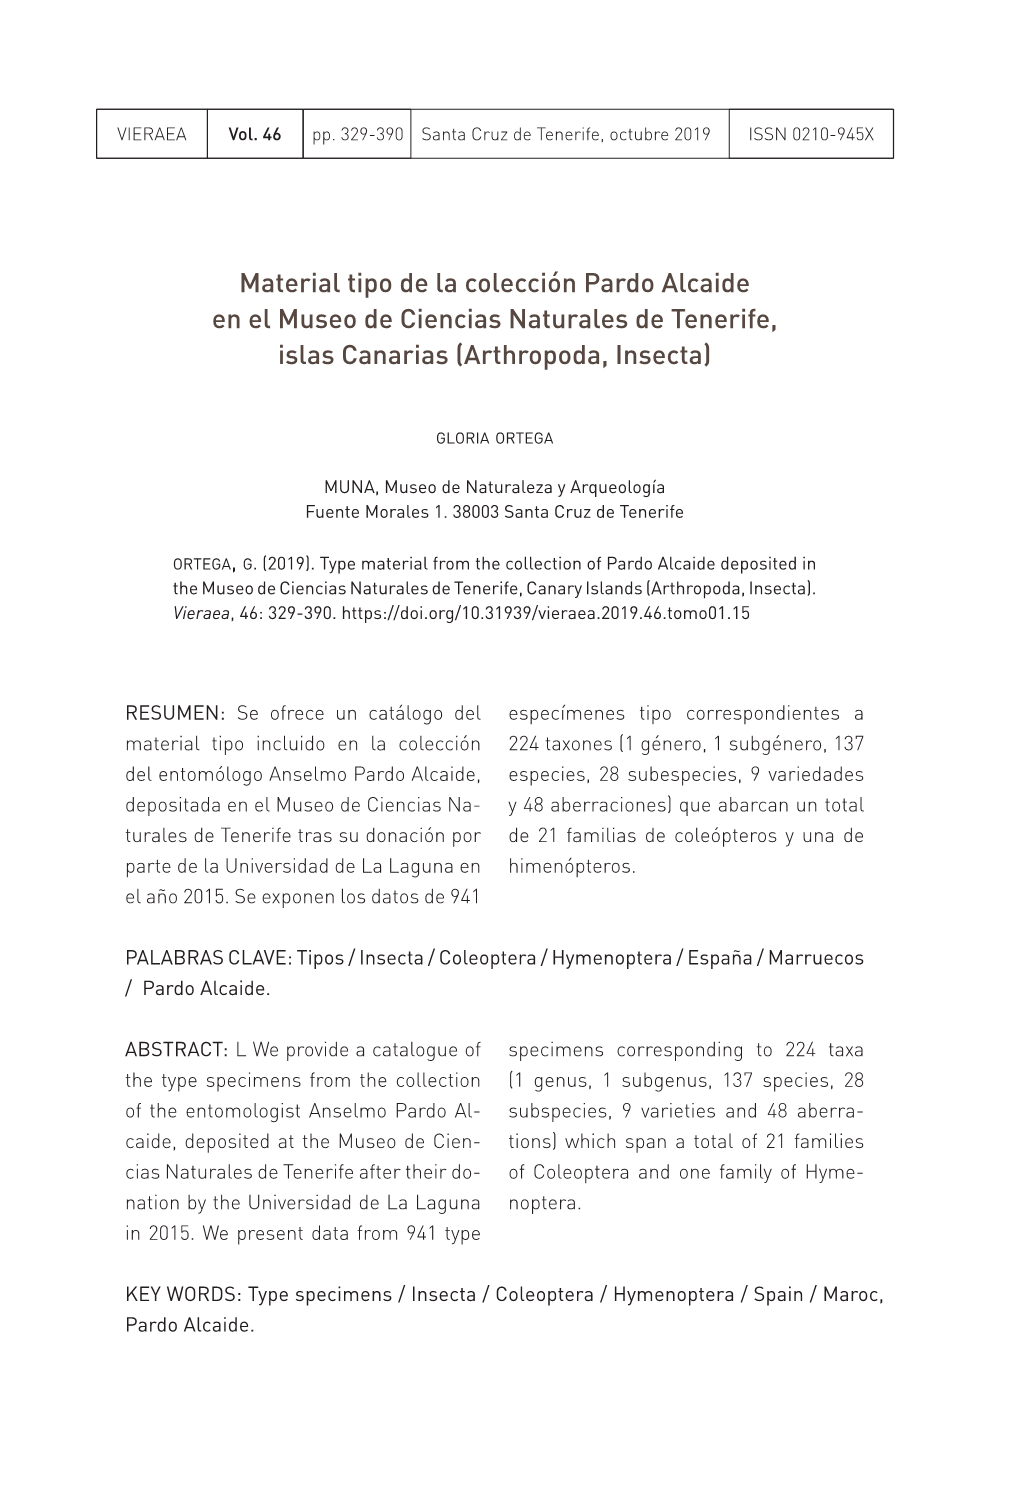 Material Tipo De La Colección Pardo Alcaide En El Museo De Ciencias Naturales De Tenerife, Islas Canarias (Arthropoda, Insecta)